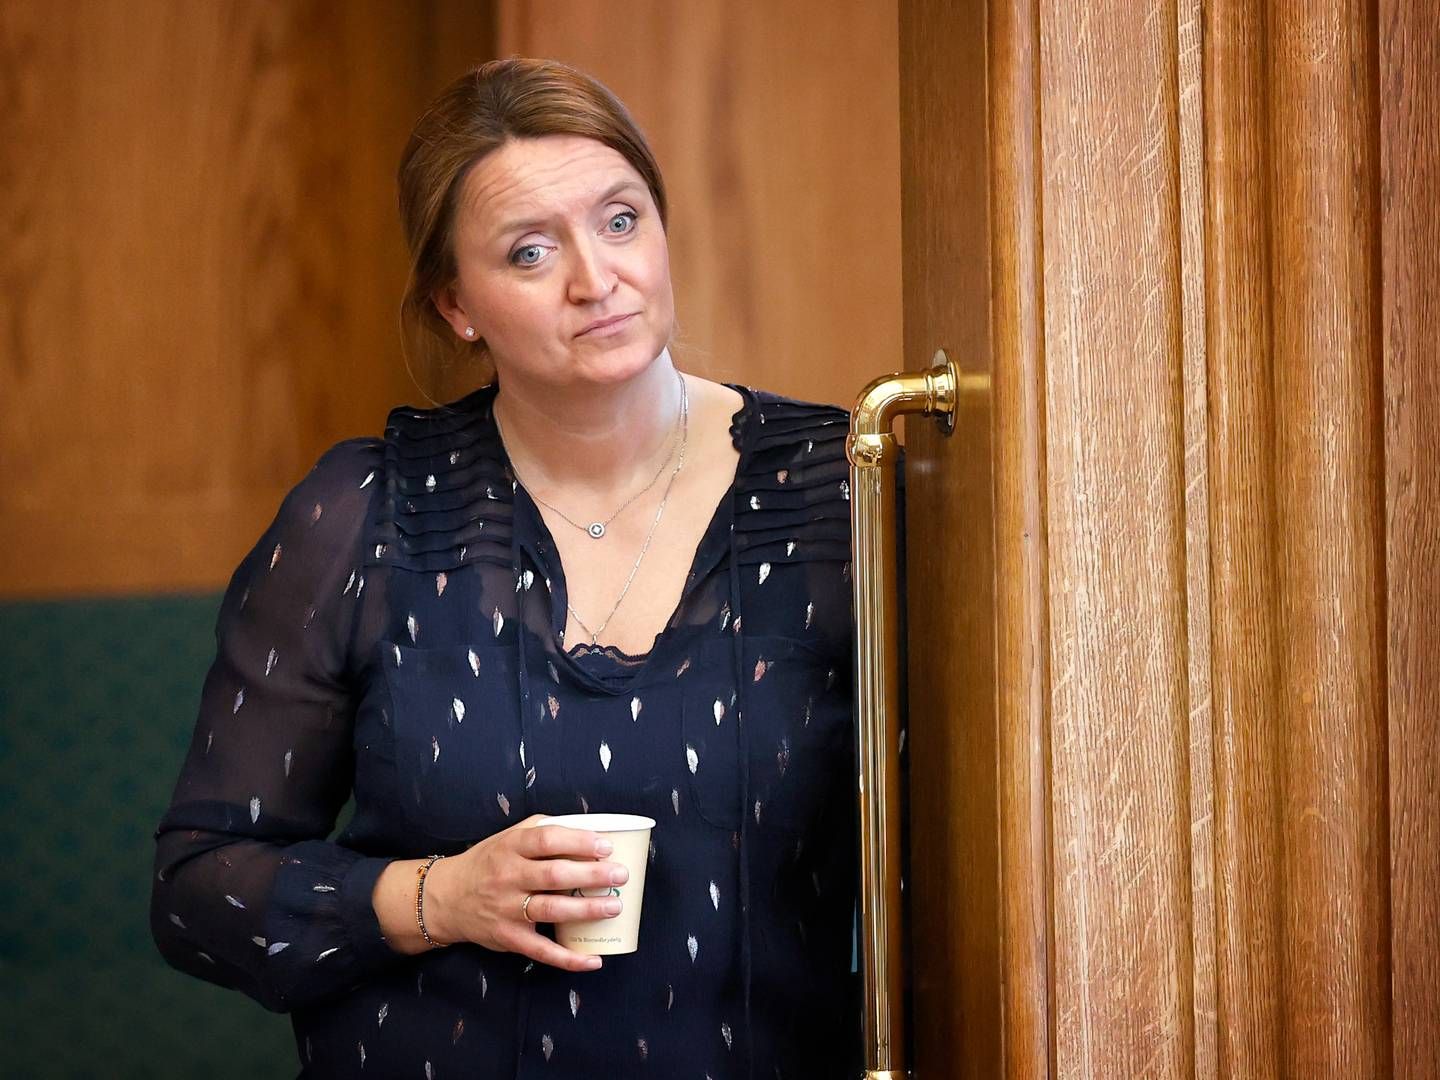 Heidi Bank blev valgt til Folketinget for Venstre i 2019, men blev ikke genvalgt i 2022. Nu afløser hun Jakob Ellemann-Jensen, som forlader Folketinget.